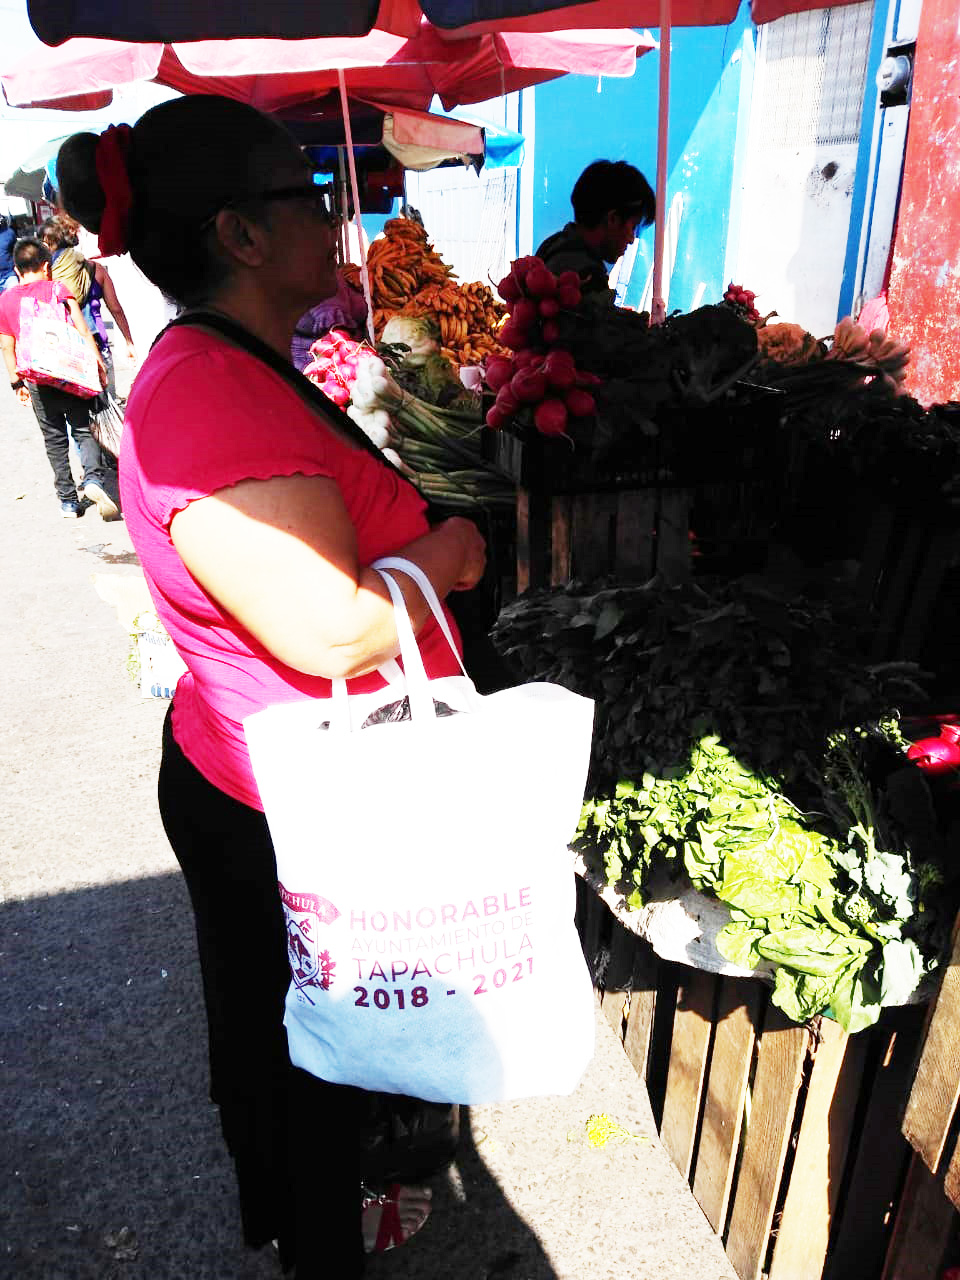 Por indicaciones del alcalde Gurría Penagos se distribuyen gratuitamente bolsas ecológicas